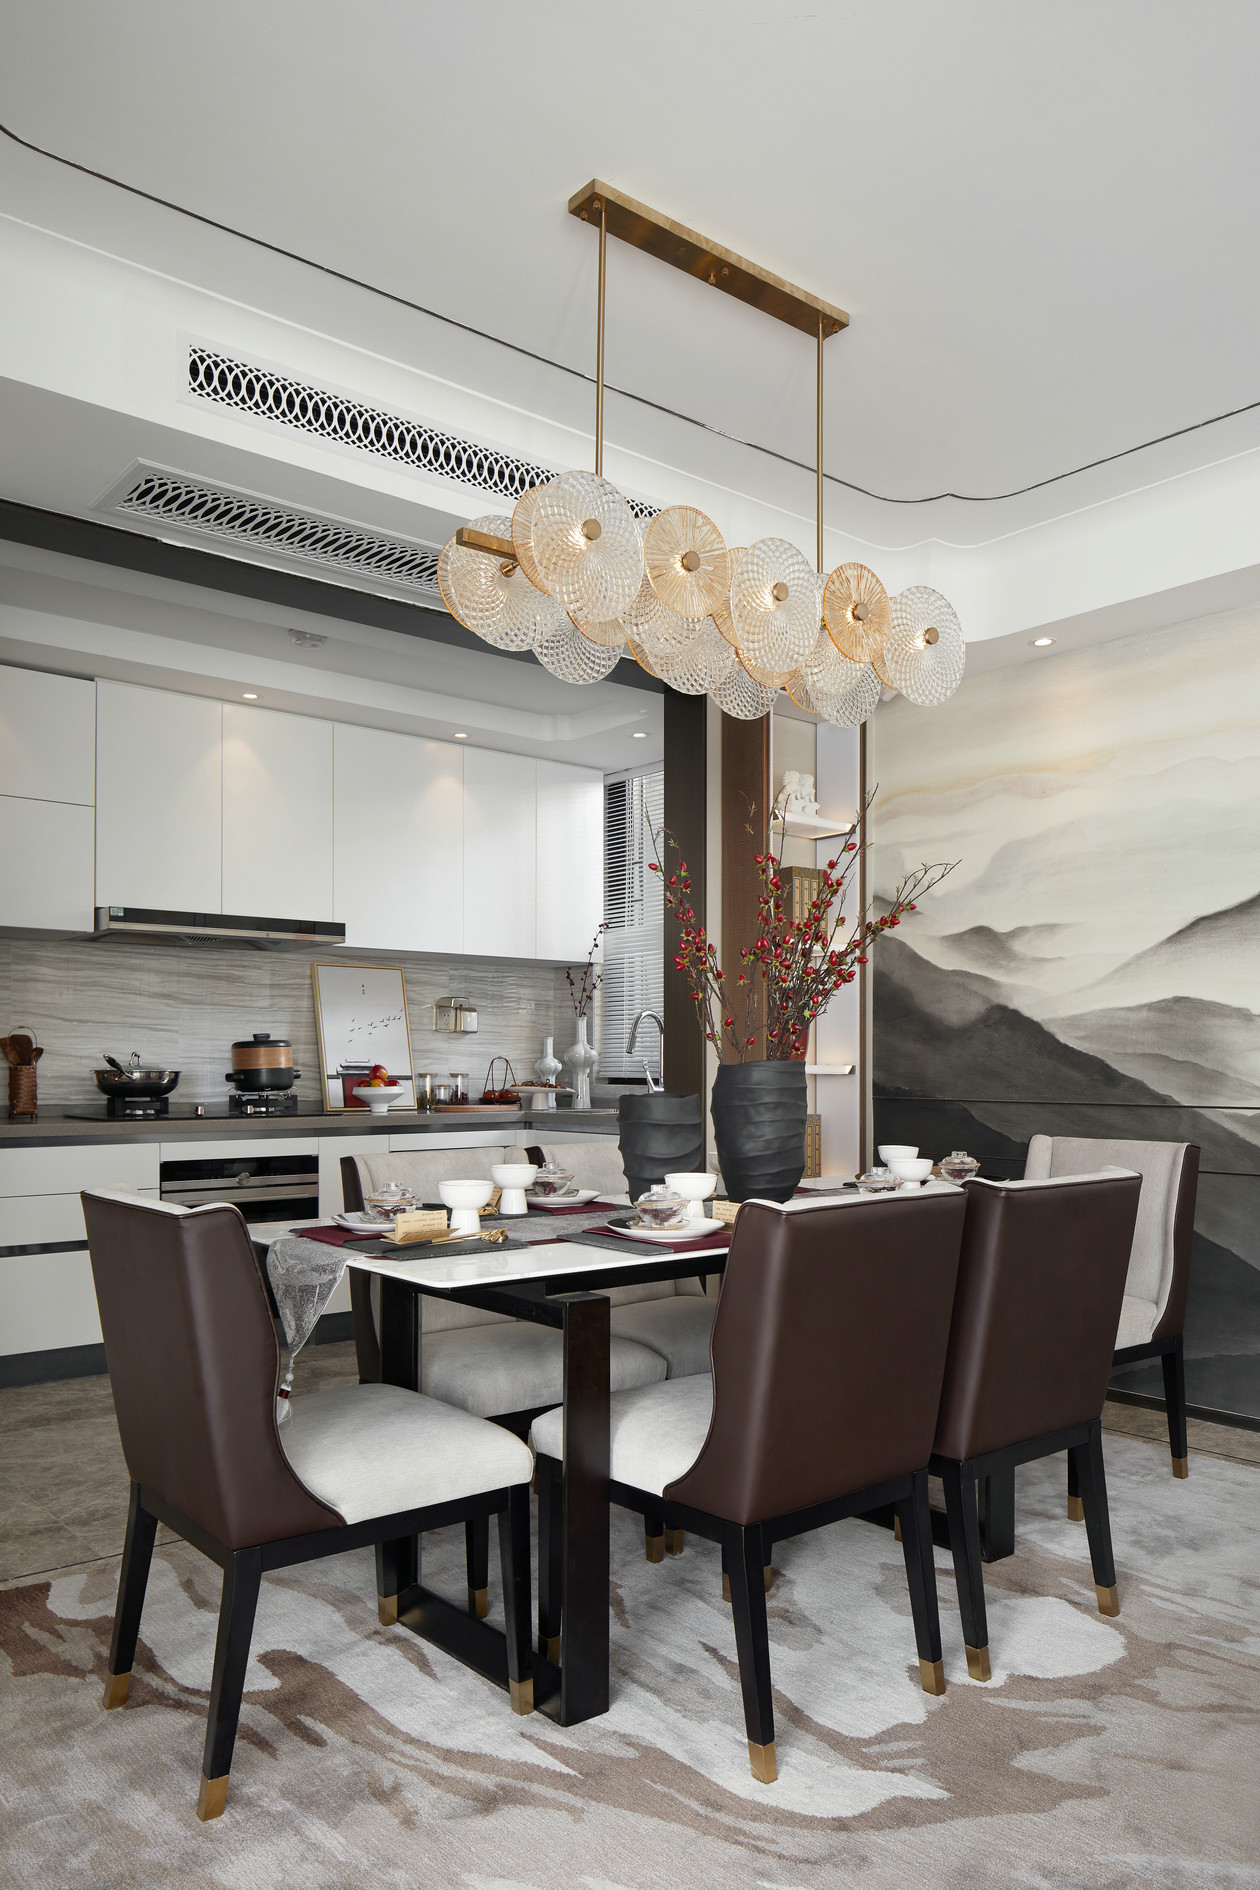 新中式風格室內家裝案例效果圖-餐廳